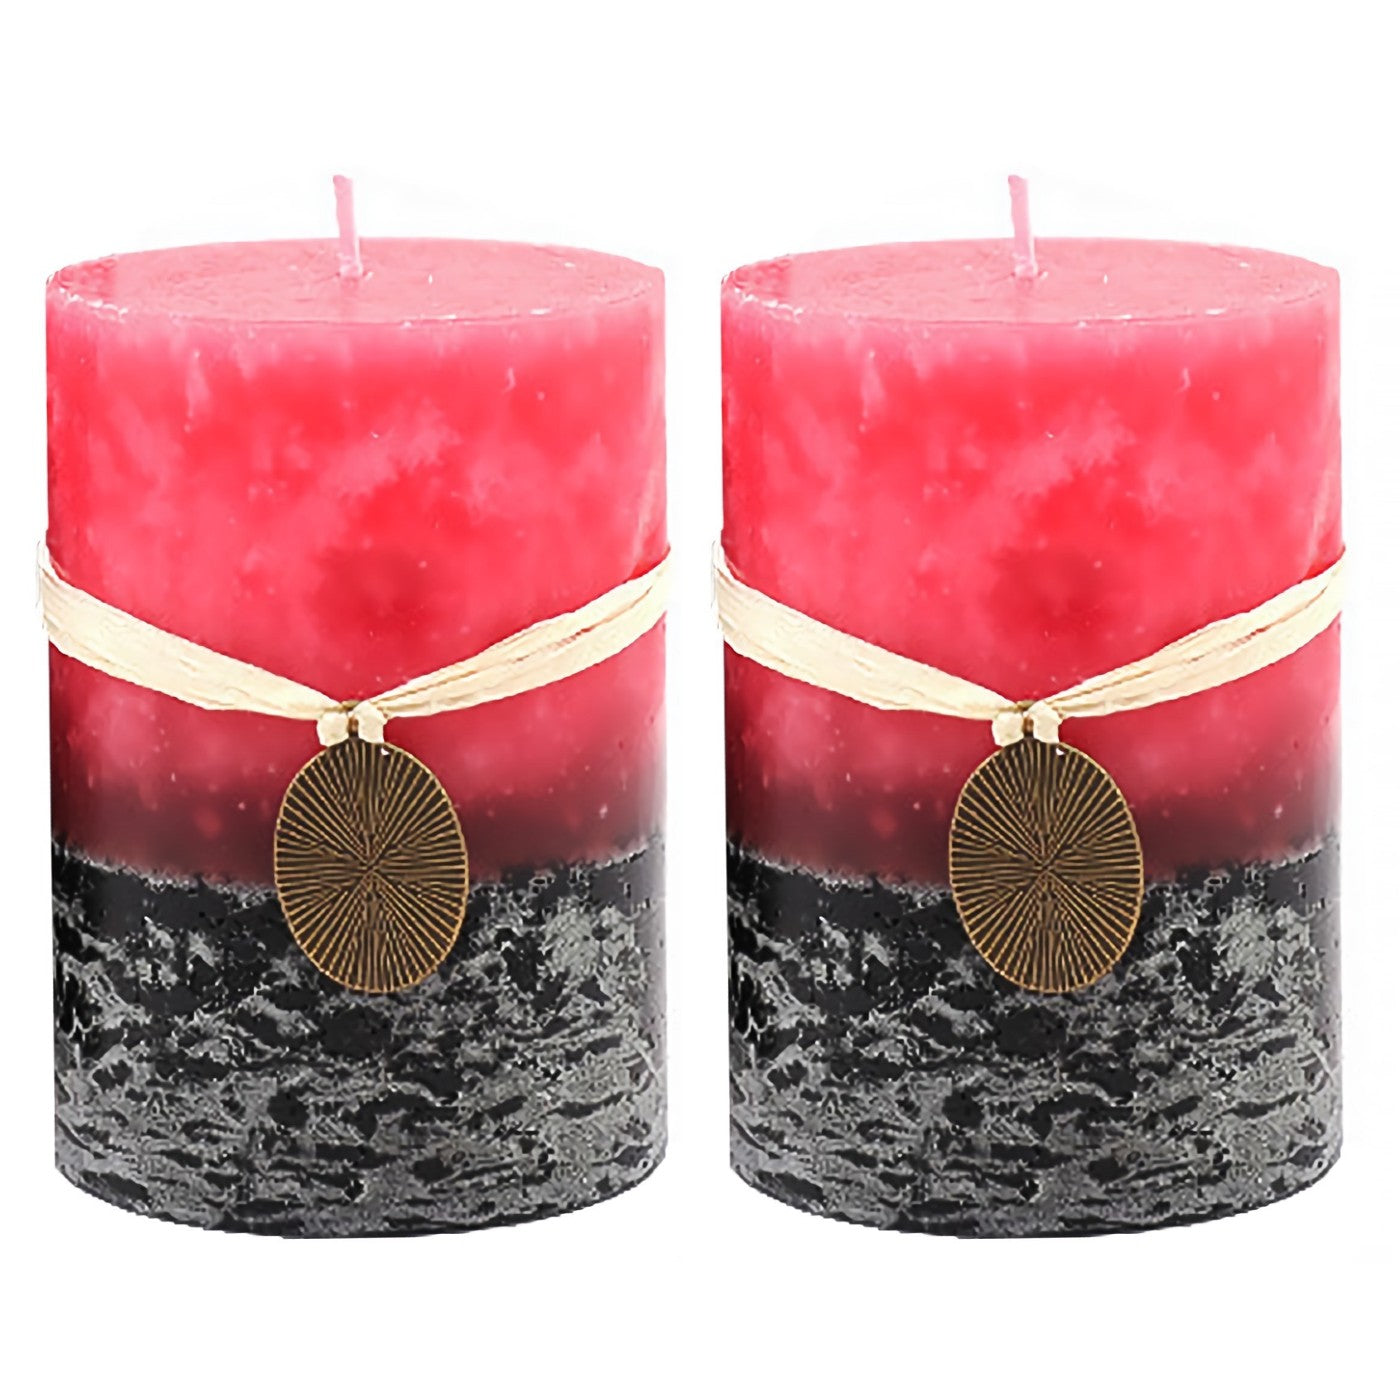 Mottled Pillar Candles 3x4''- Set of 2 | Rustic Home Decor | Rose Mild Fragrance (2 Pack, Pink)